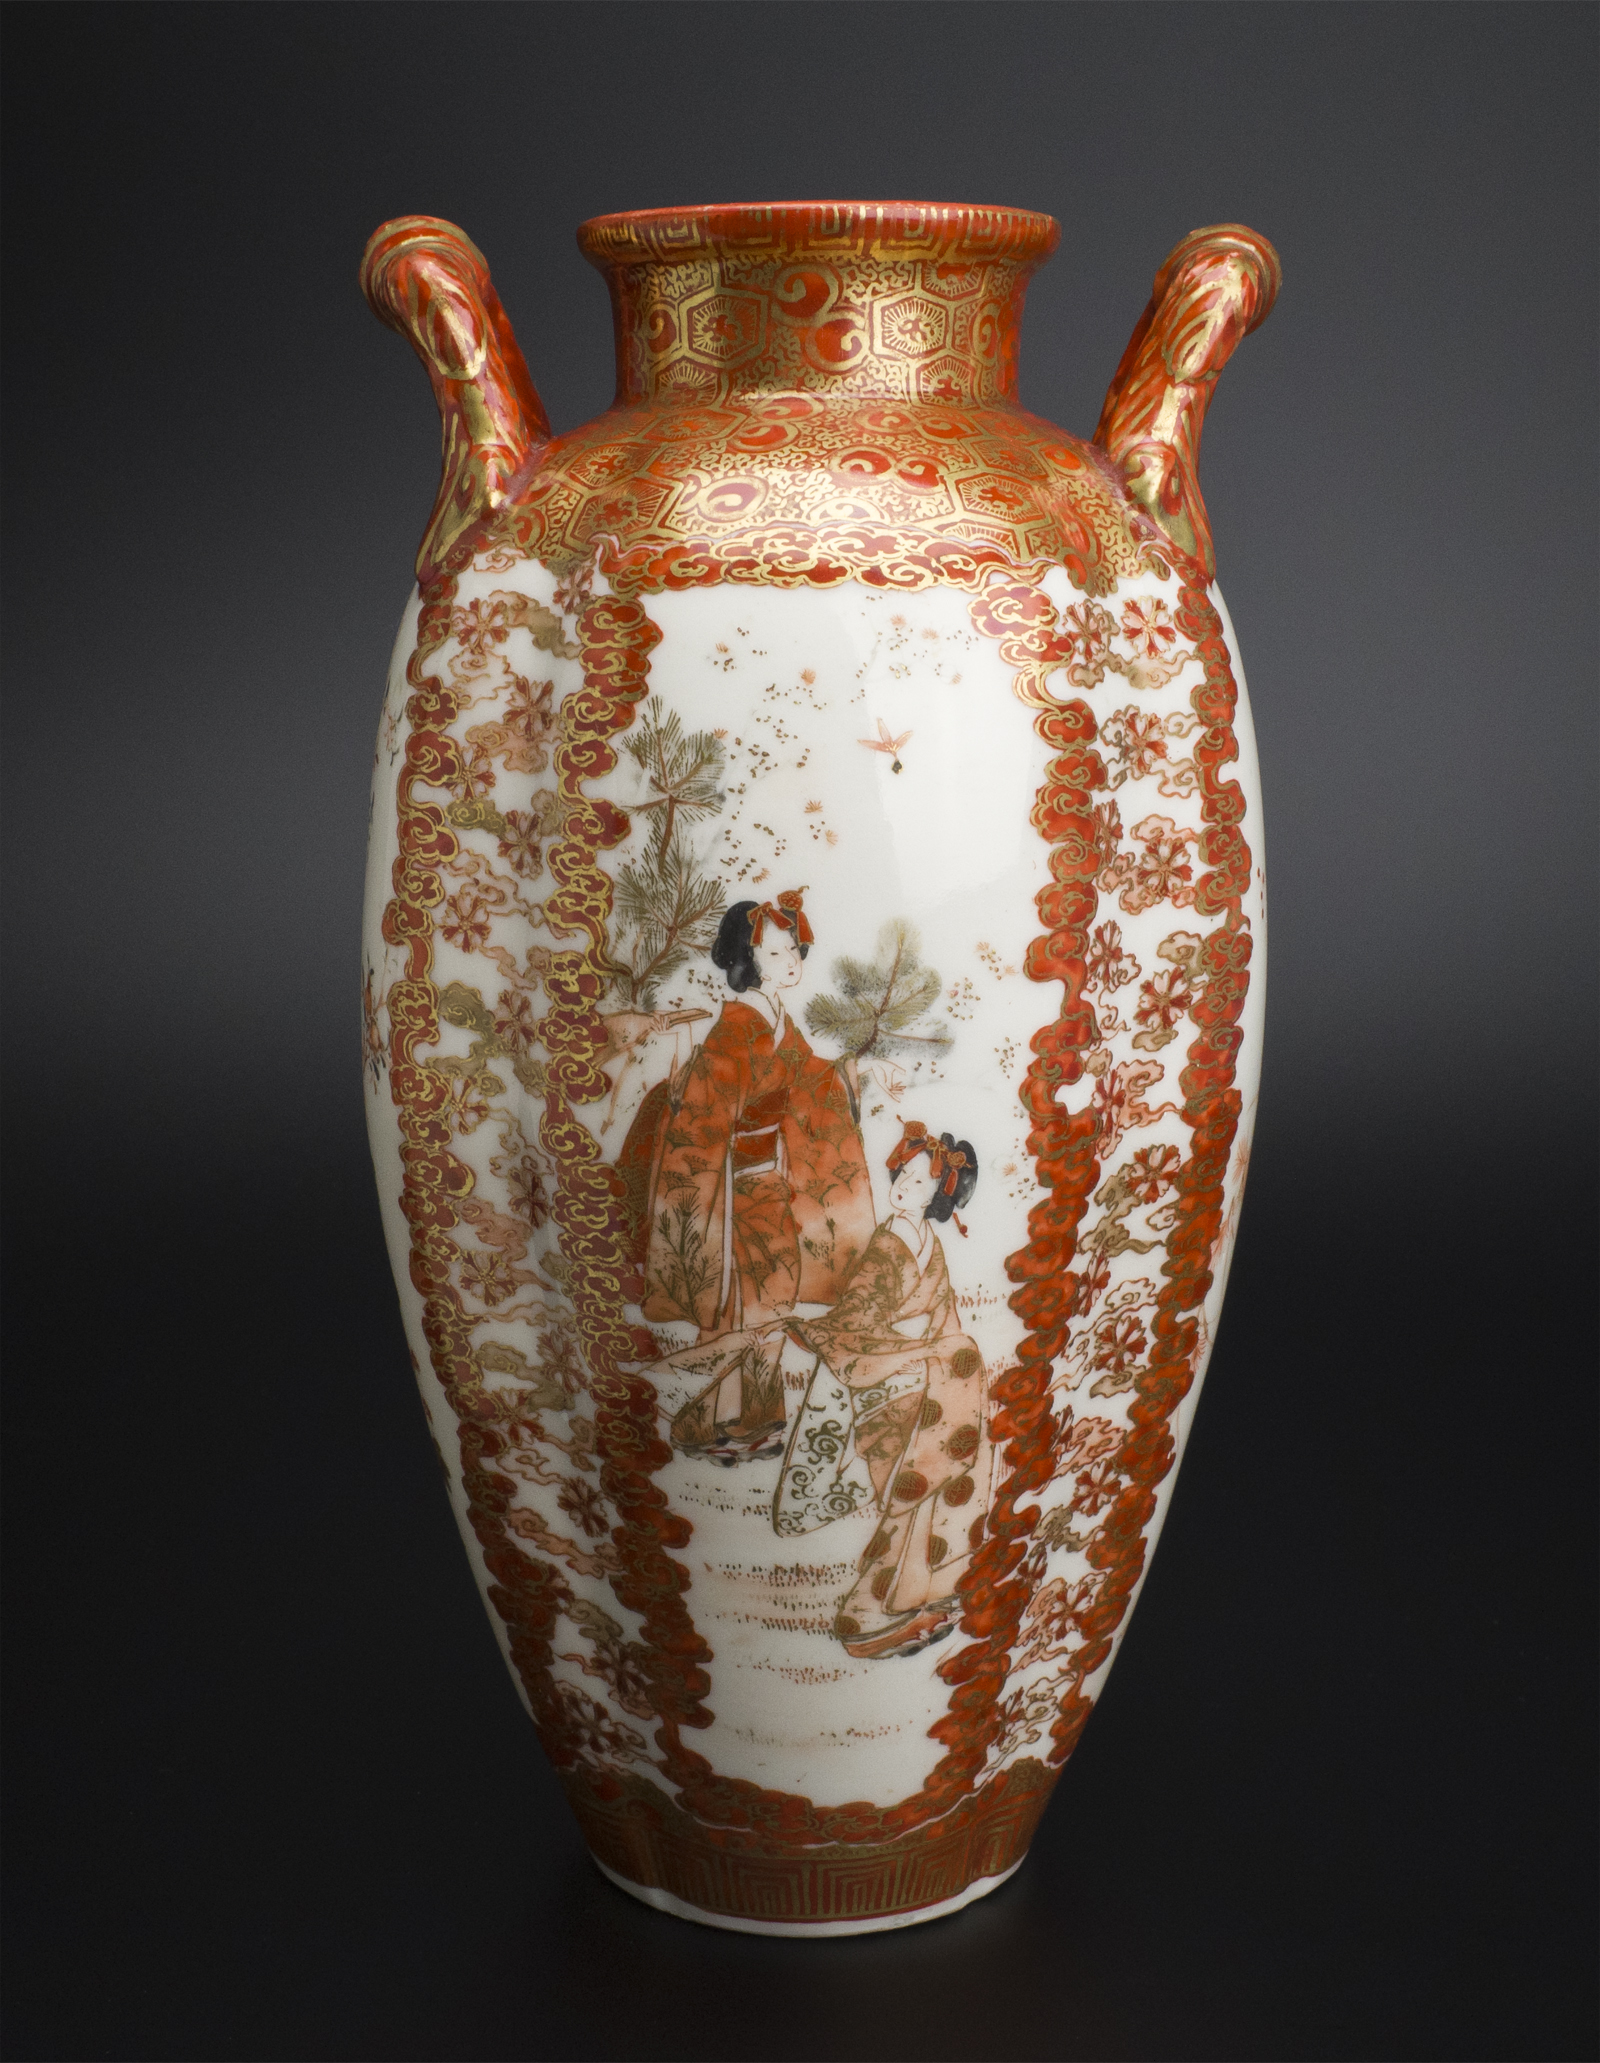 史博物館加賀九谷綿野製 金彩人物紋瓶 明治時代 古美術 花器、壷